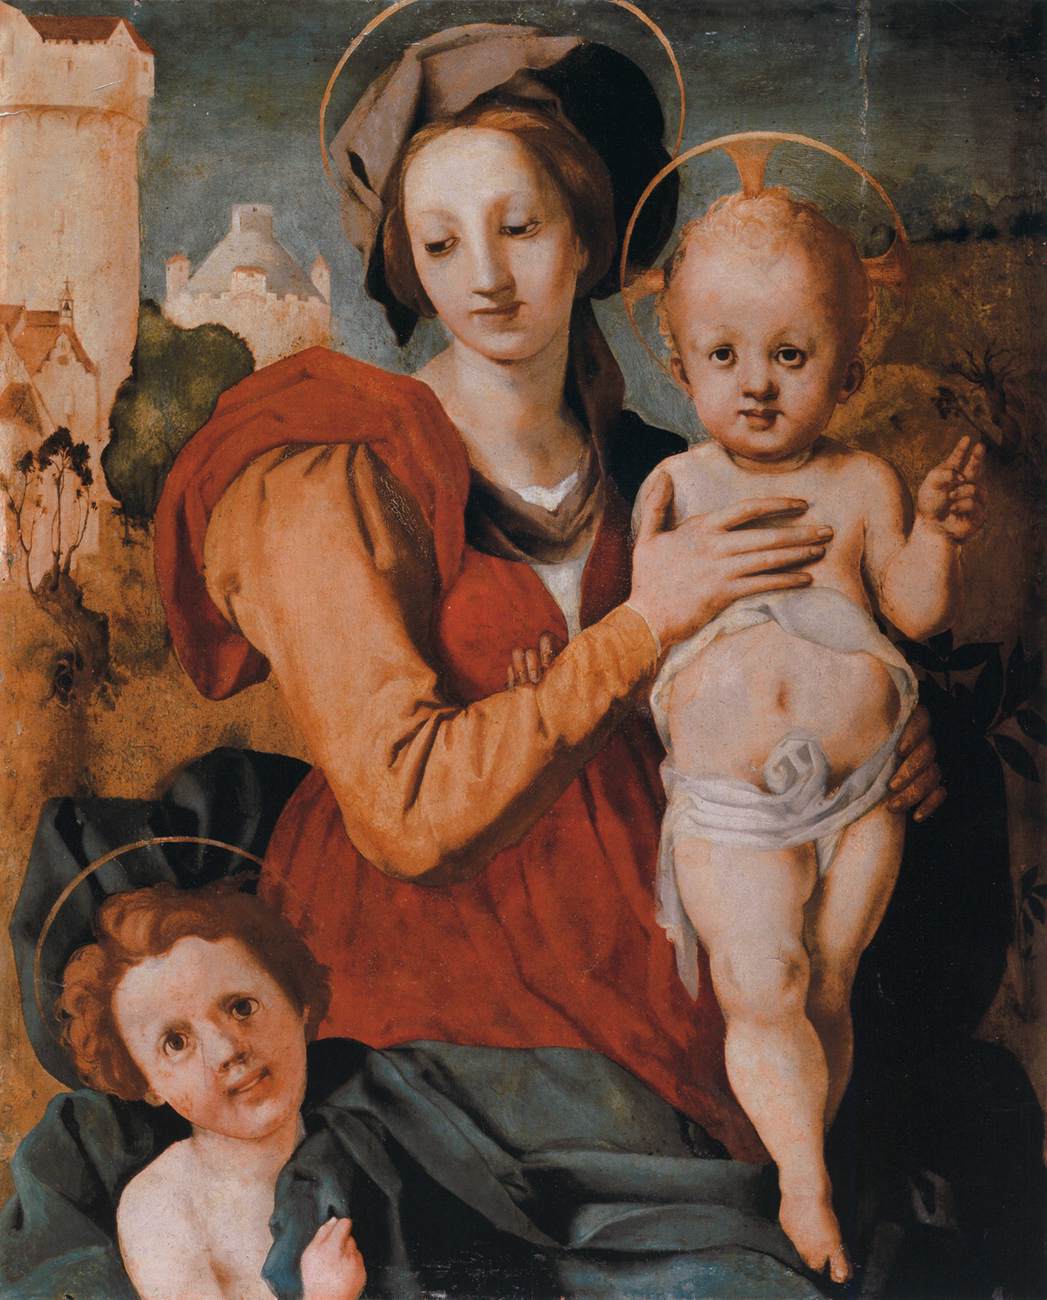 La Virgen y el Niño con El Joven San Juan Bautista